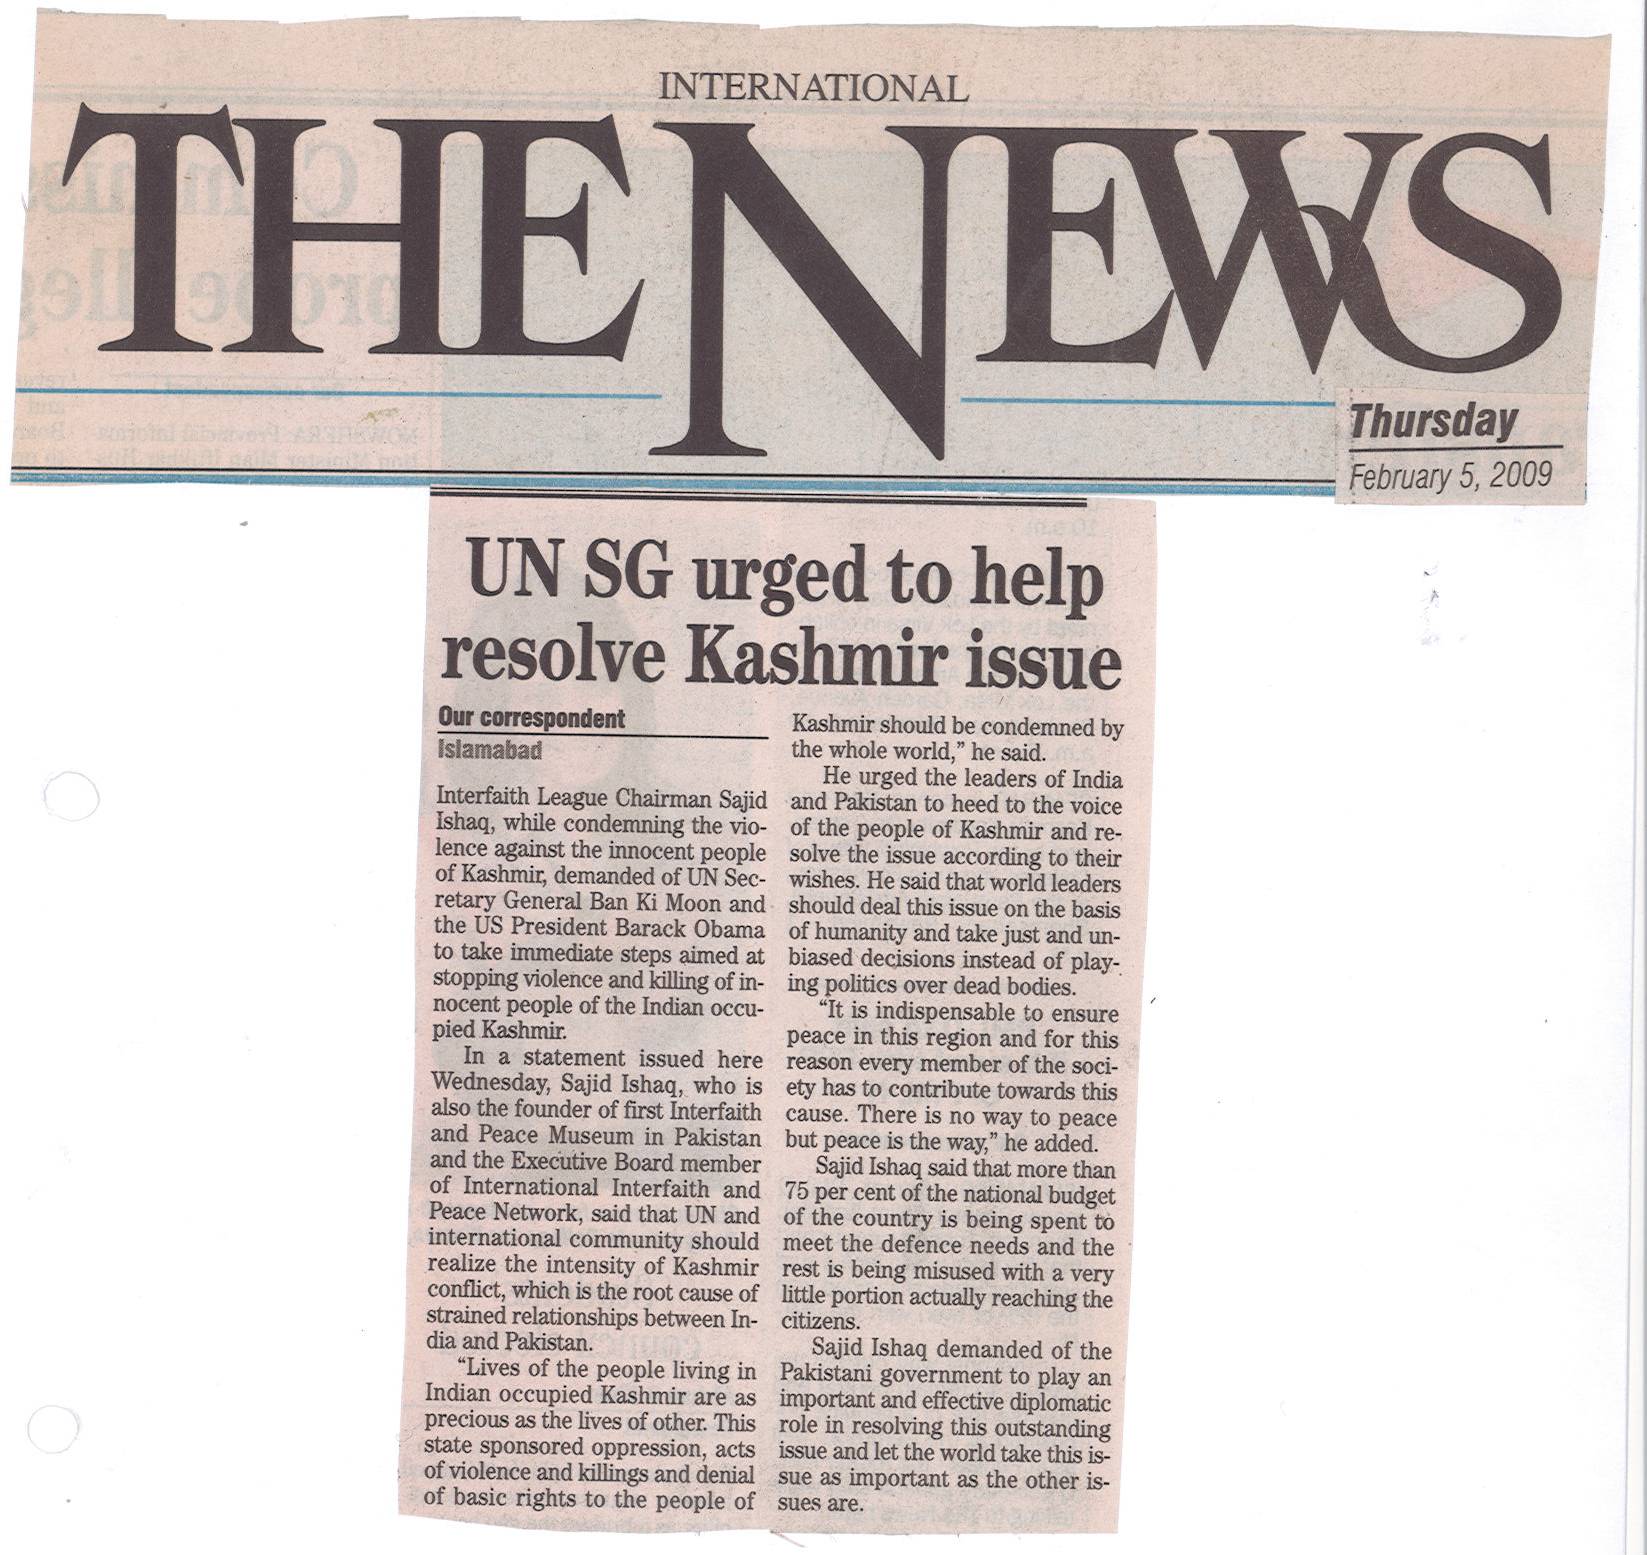 UN SG urged to help resolve Kashmir issue